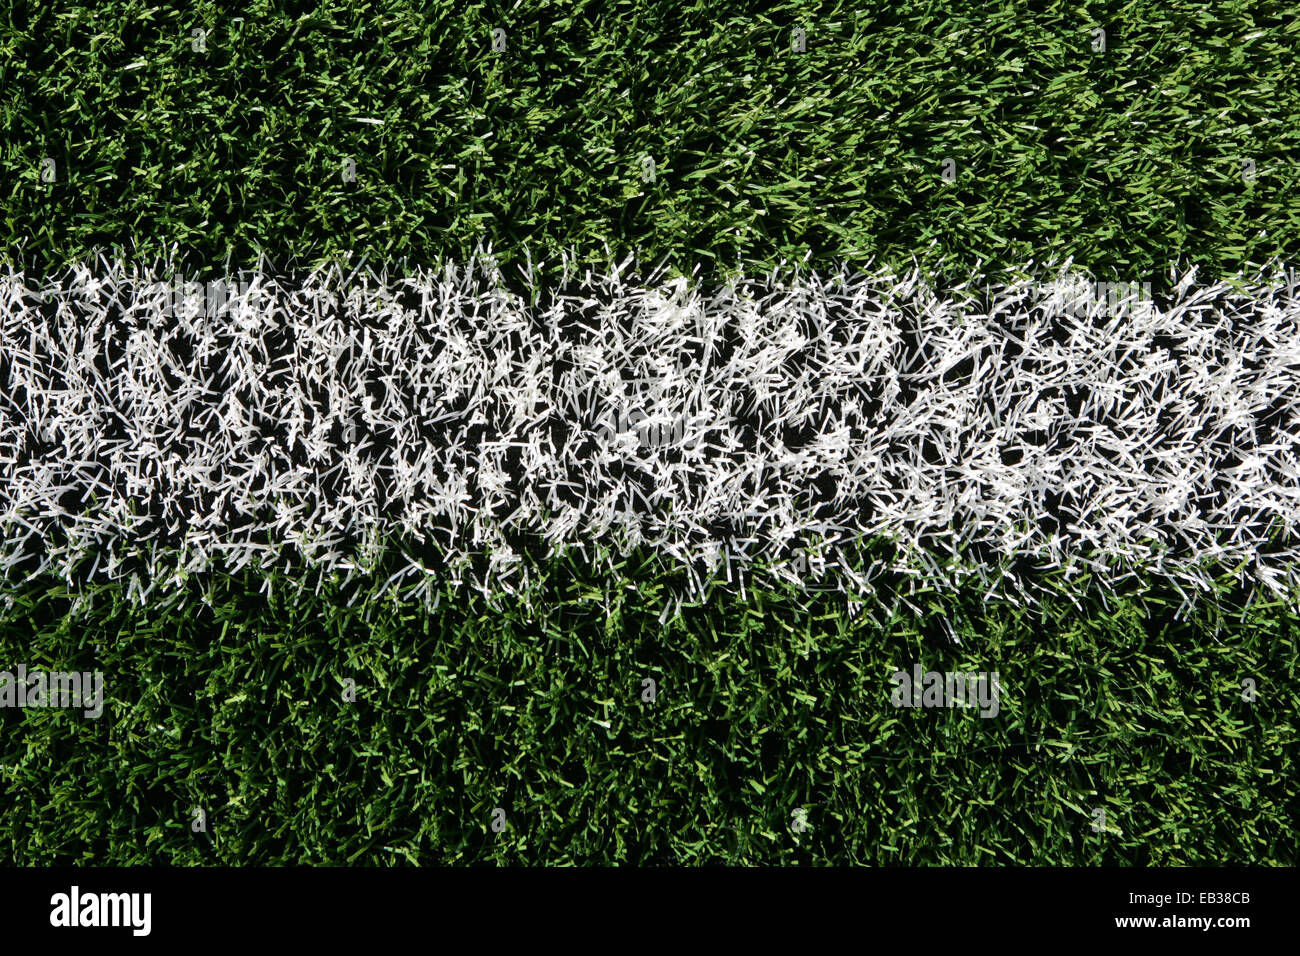 Close up de gazon artificiel de rugby sur un terrain d'entraînement avec une ligne blanche. Banque D'Images